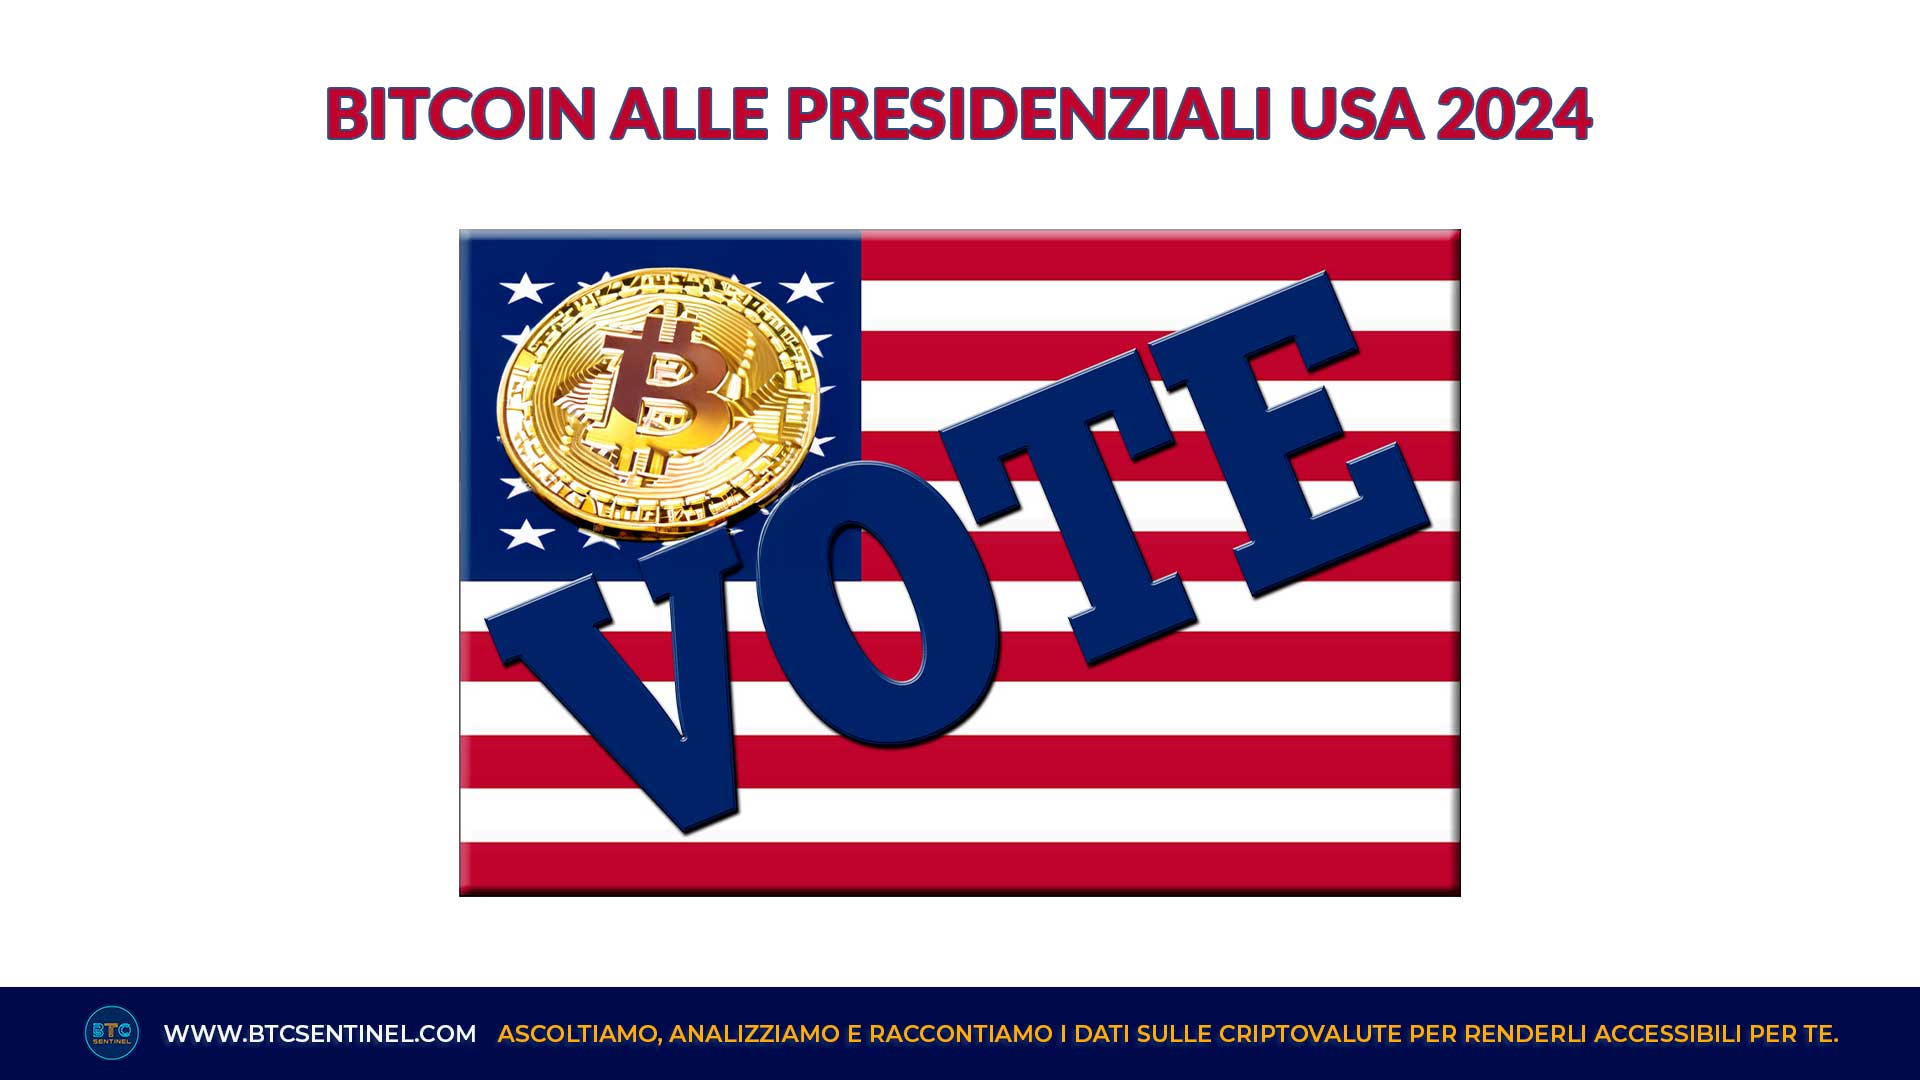 Bitcoin alle Presidenziali USA 2024: le posizioni dei candidati